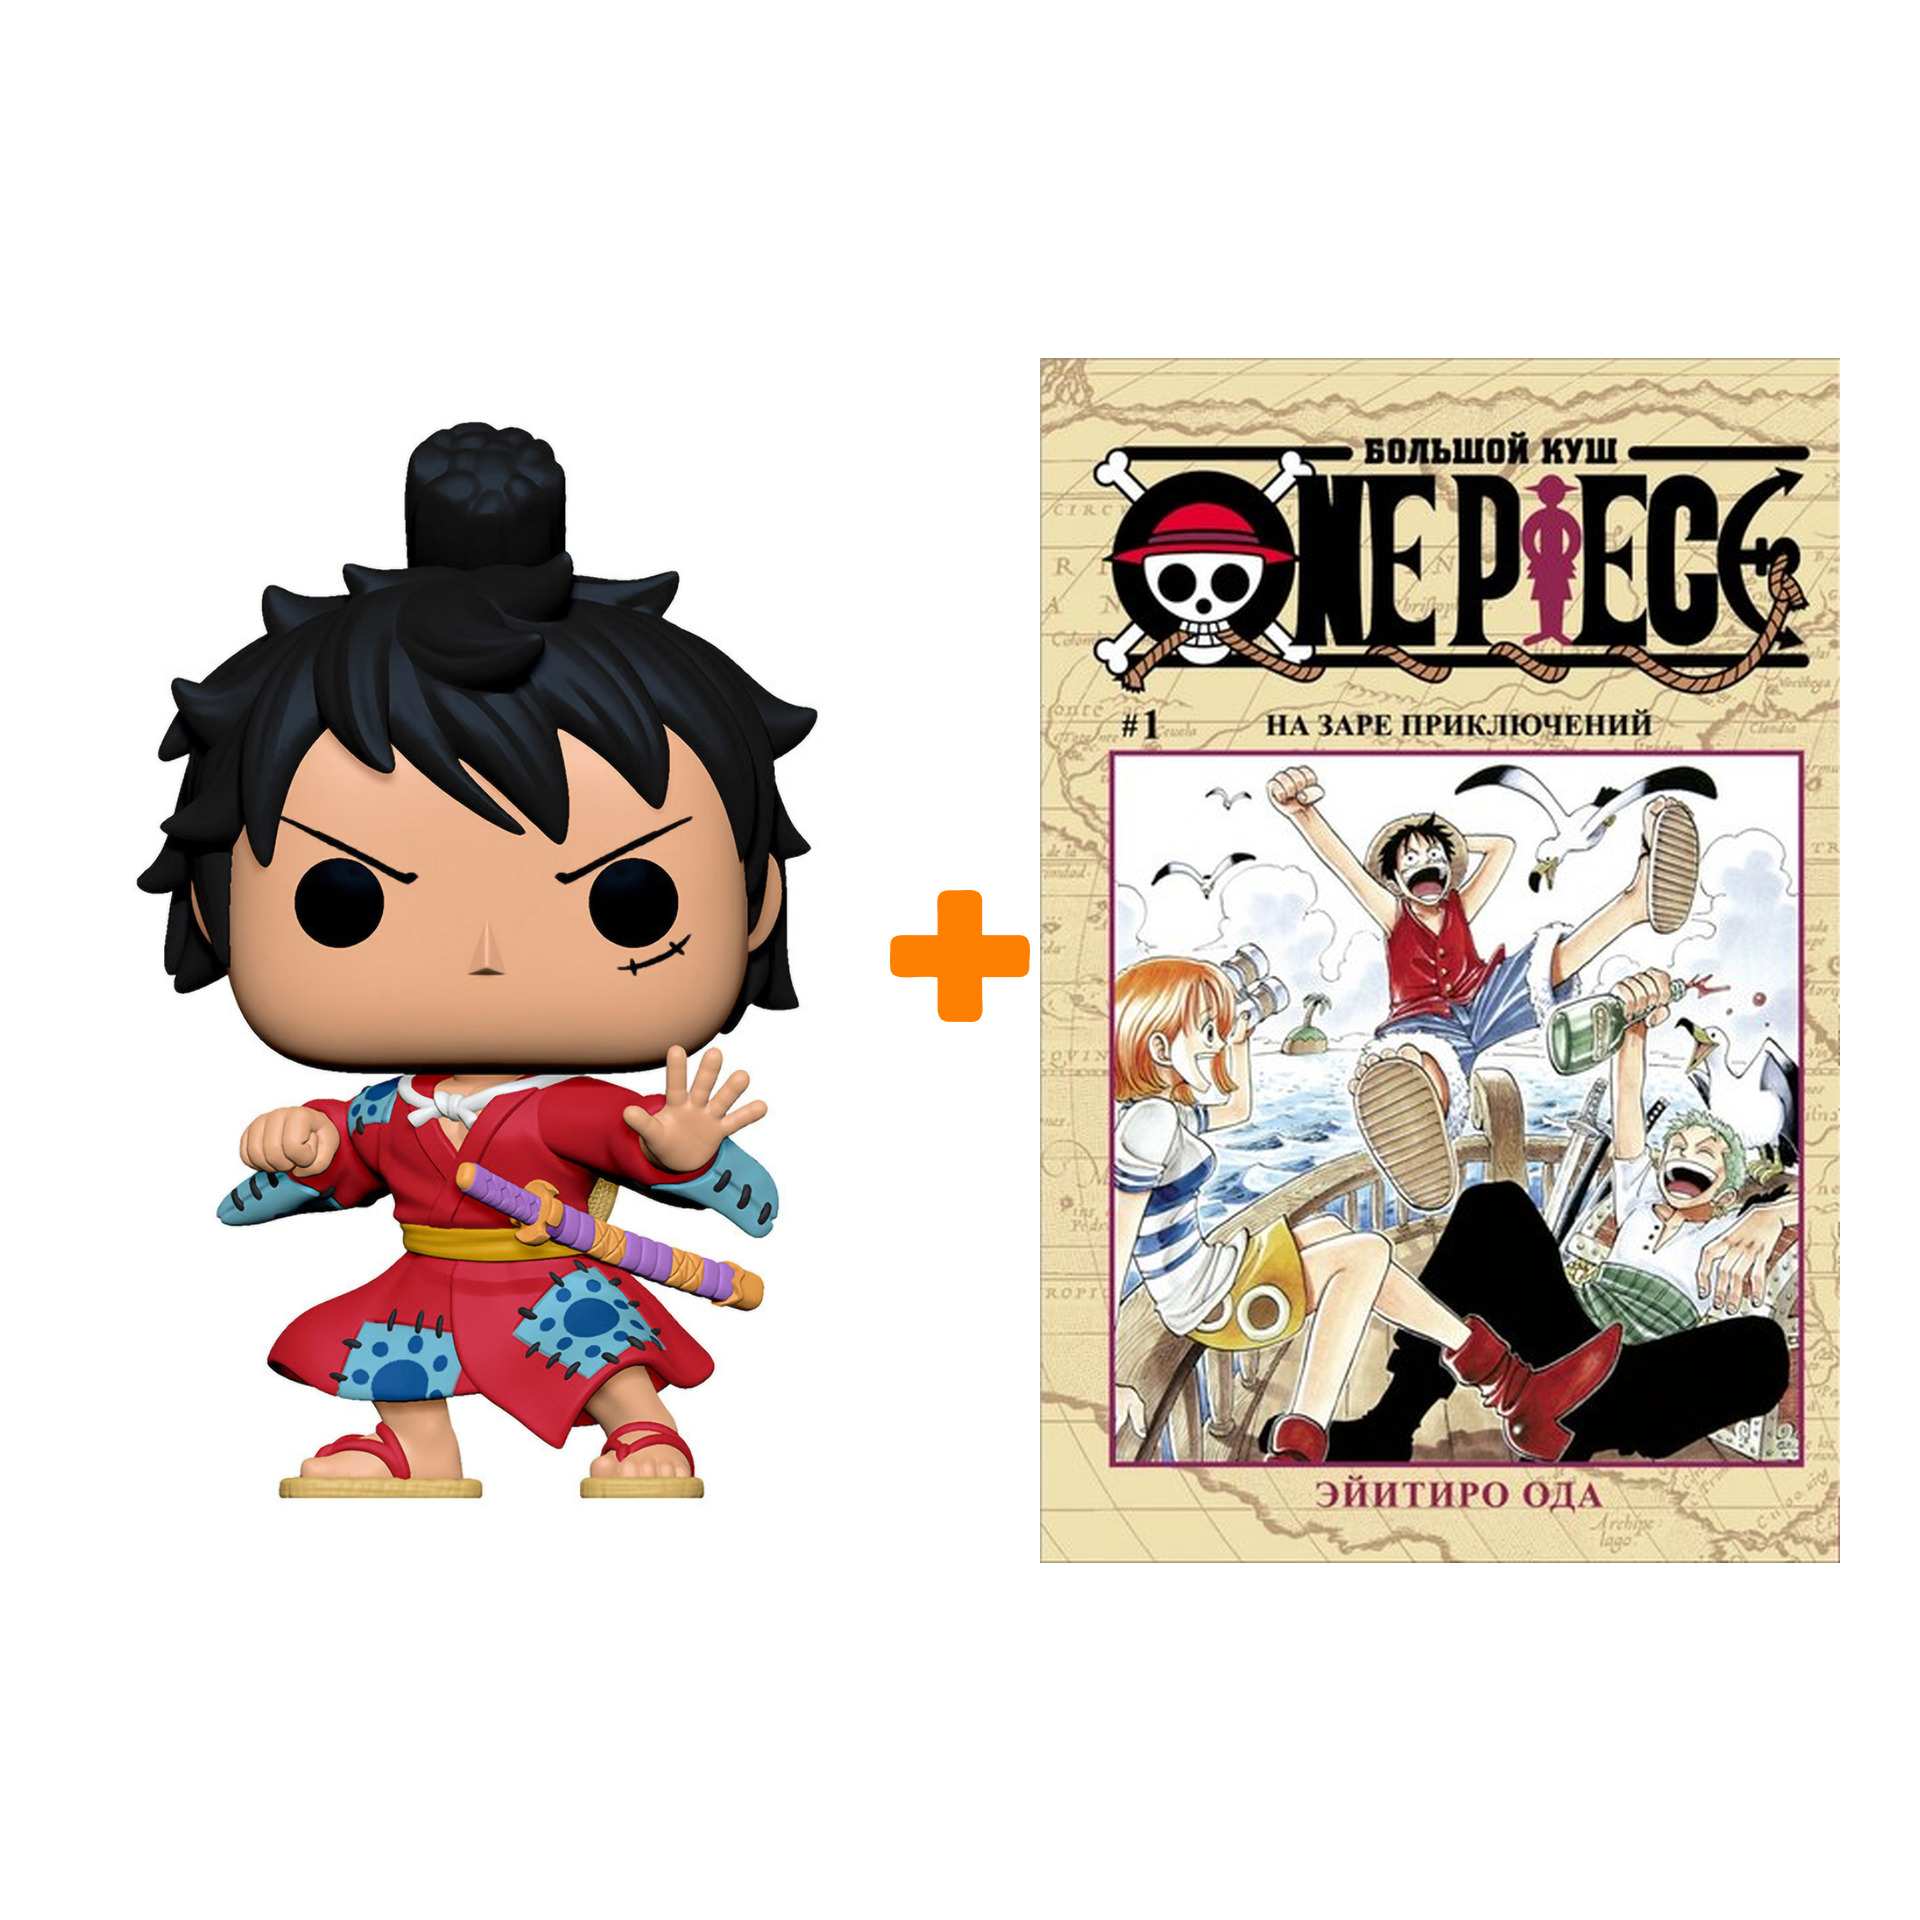 Набор:One Piece (фигурка One Piece S4: Luffytaro Metallic + манга One Piece: Большой куш 1)